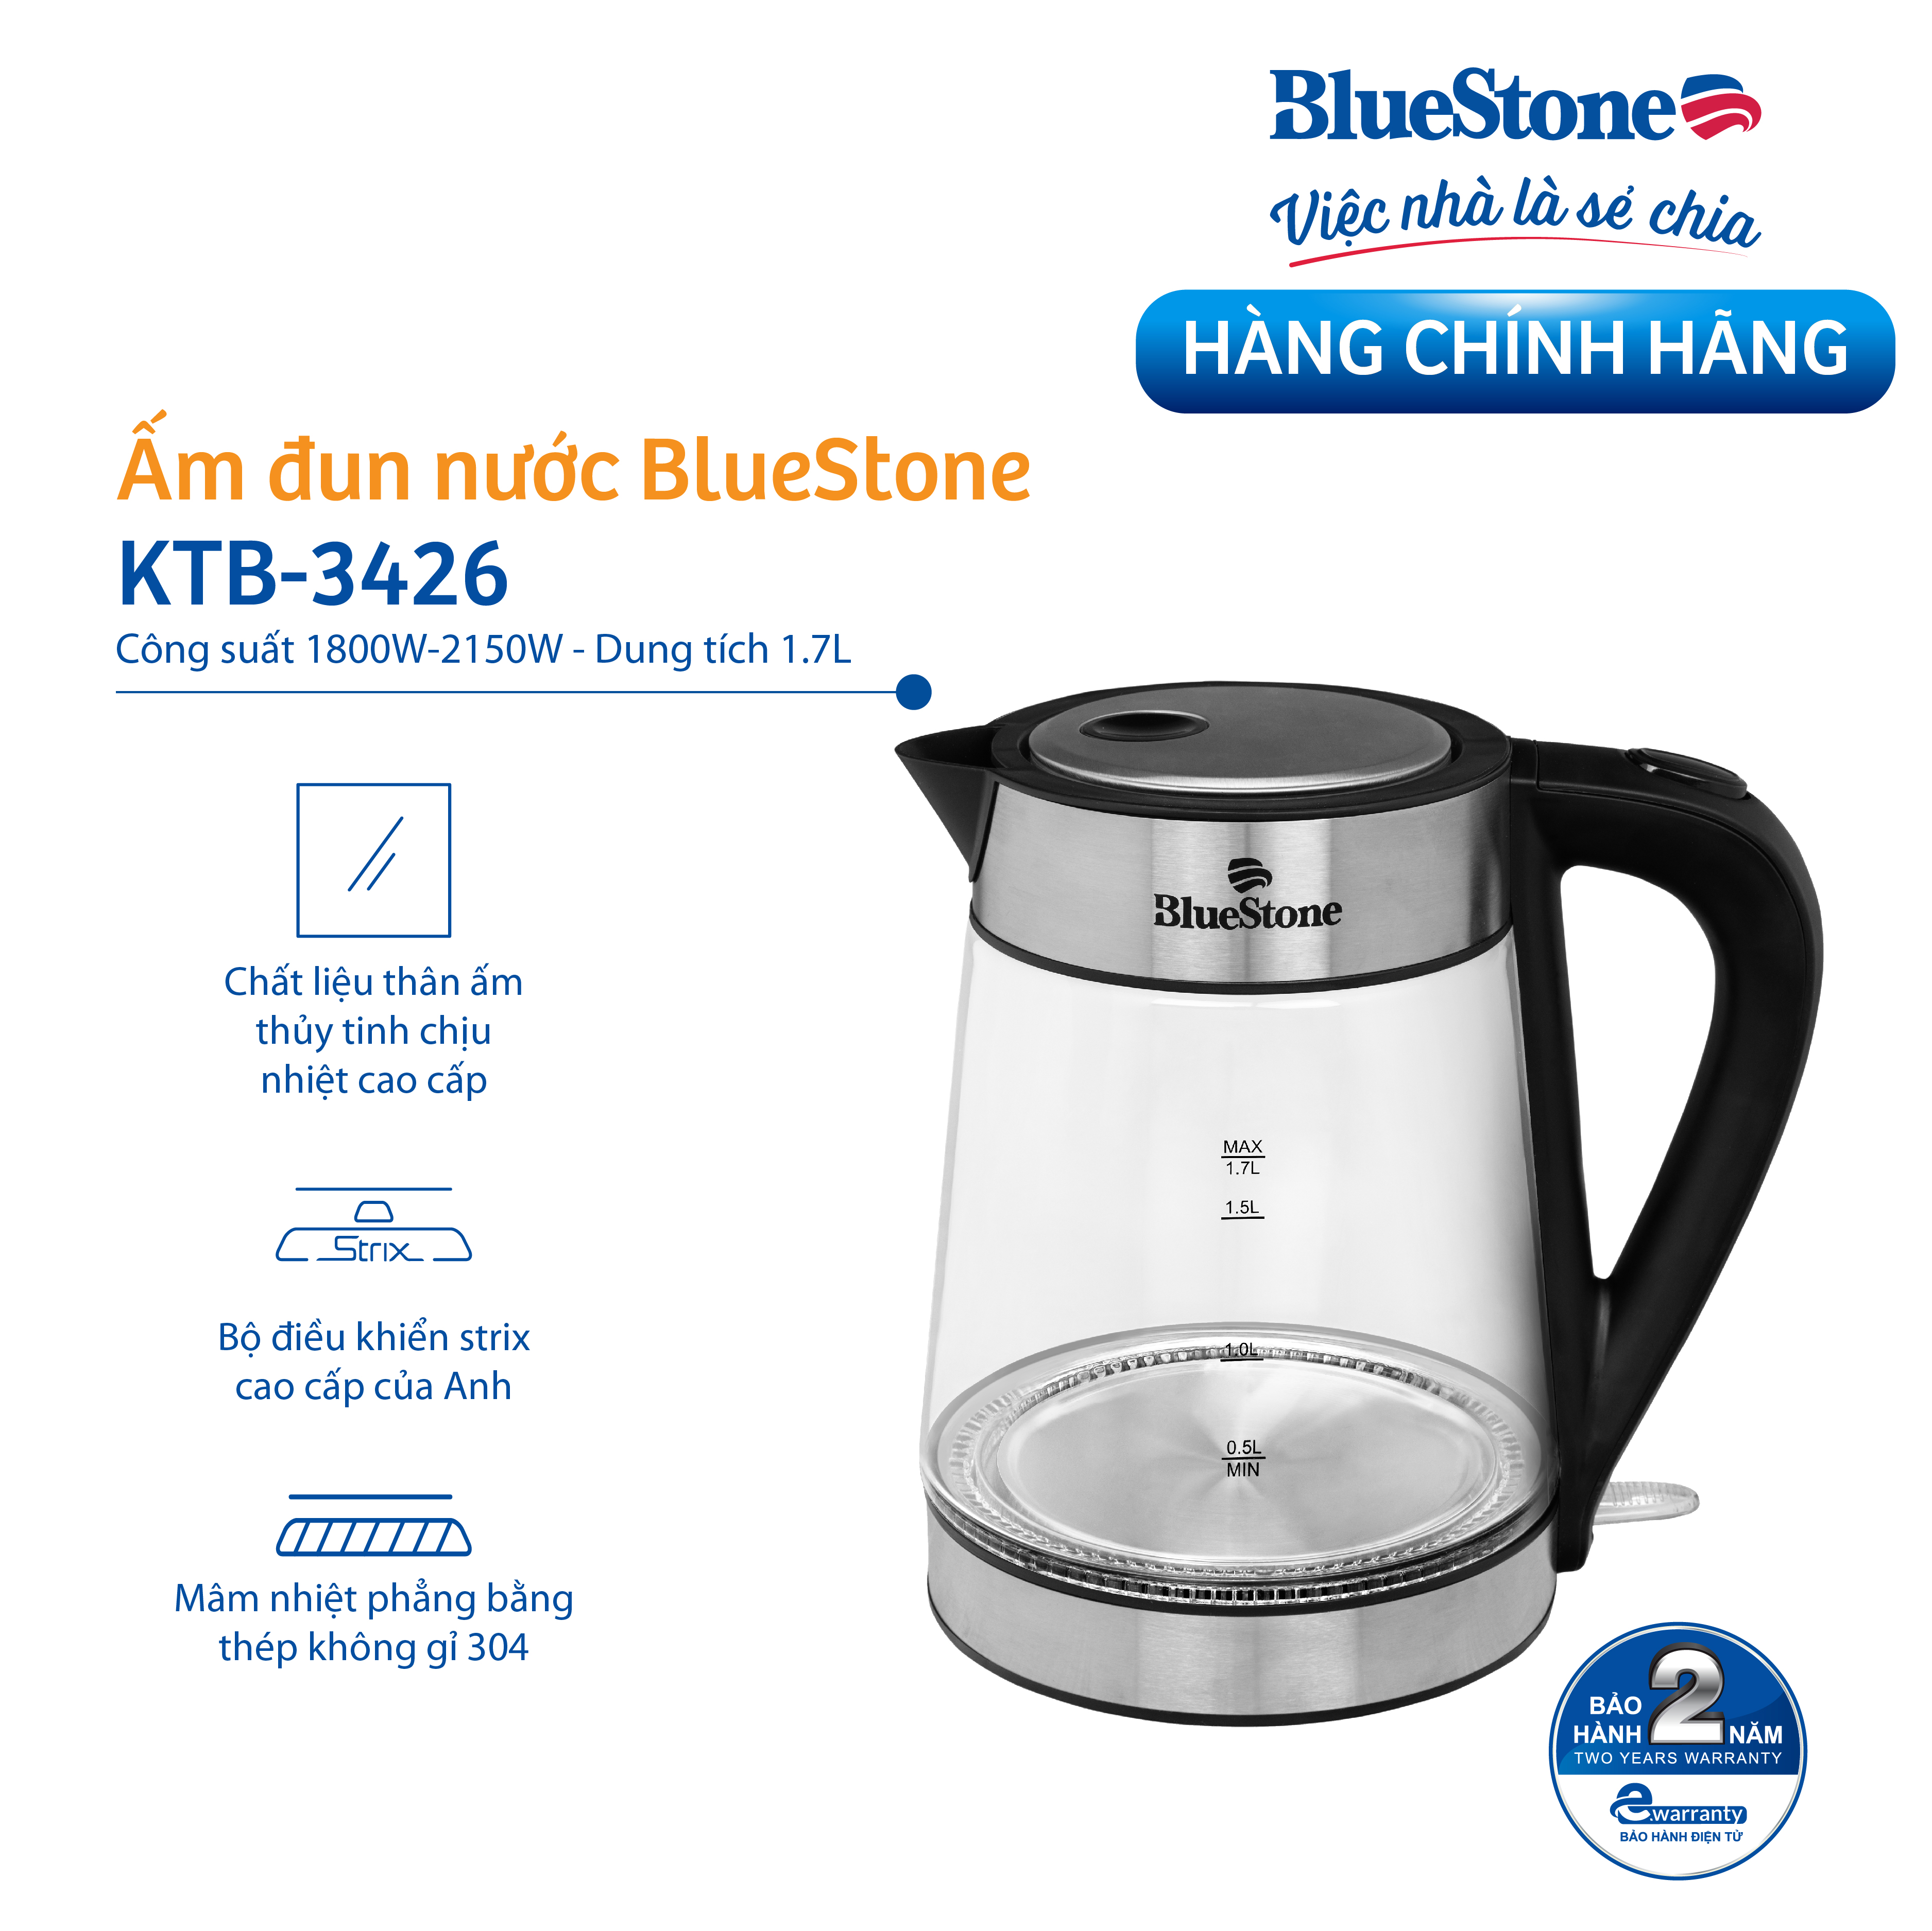 Ấm Đun Nước Thủy Tinh Bluestone KTB-3426 (1.7 Lít) - Hàng Chính Hãng